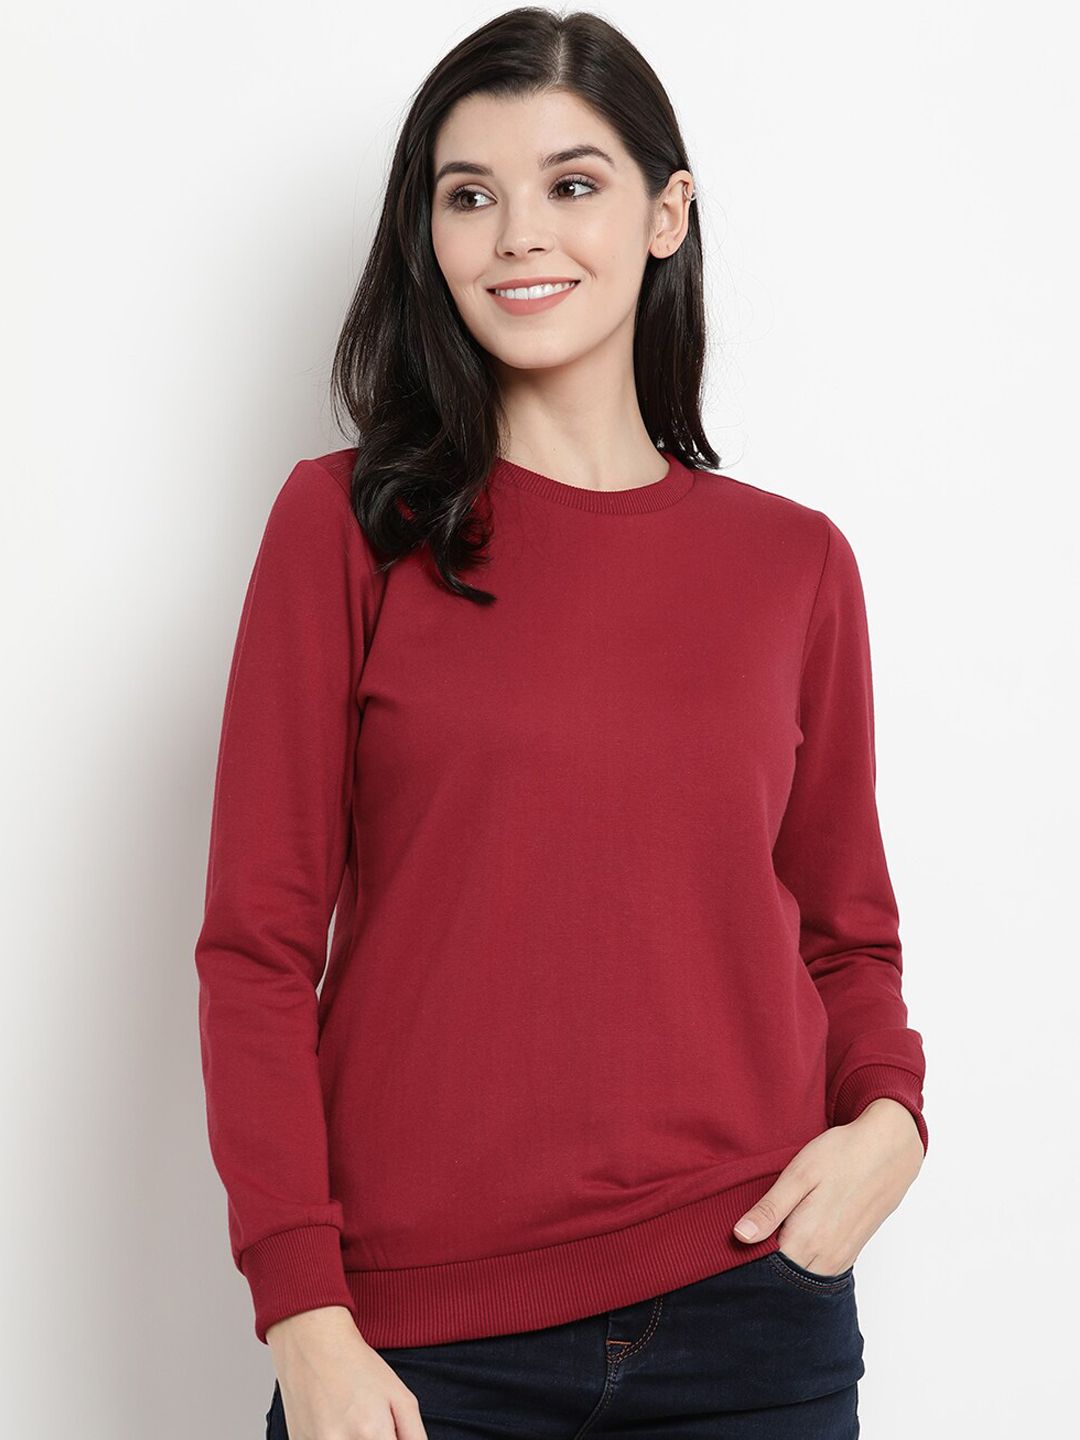 The Vanca Women Maroon Solid Sweatshirt Price in India